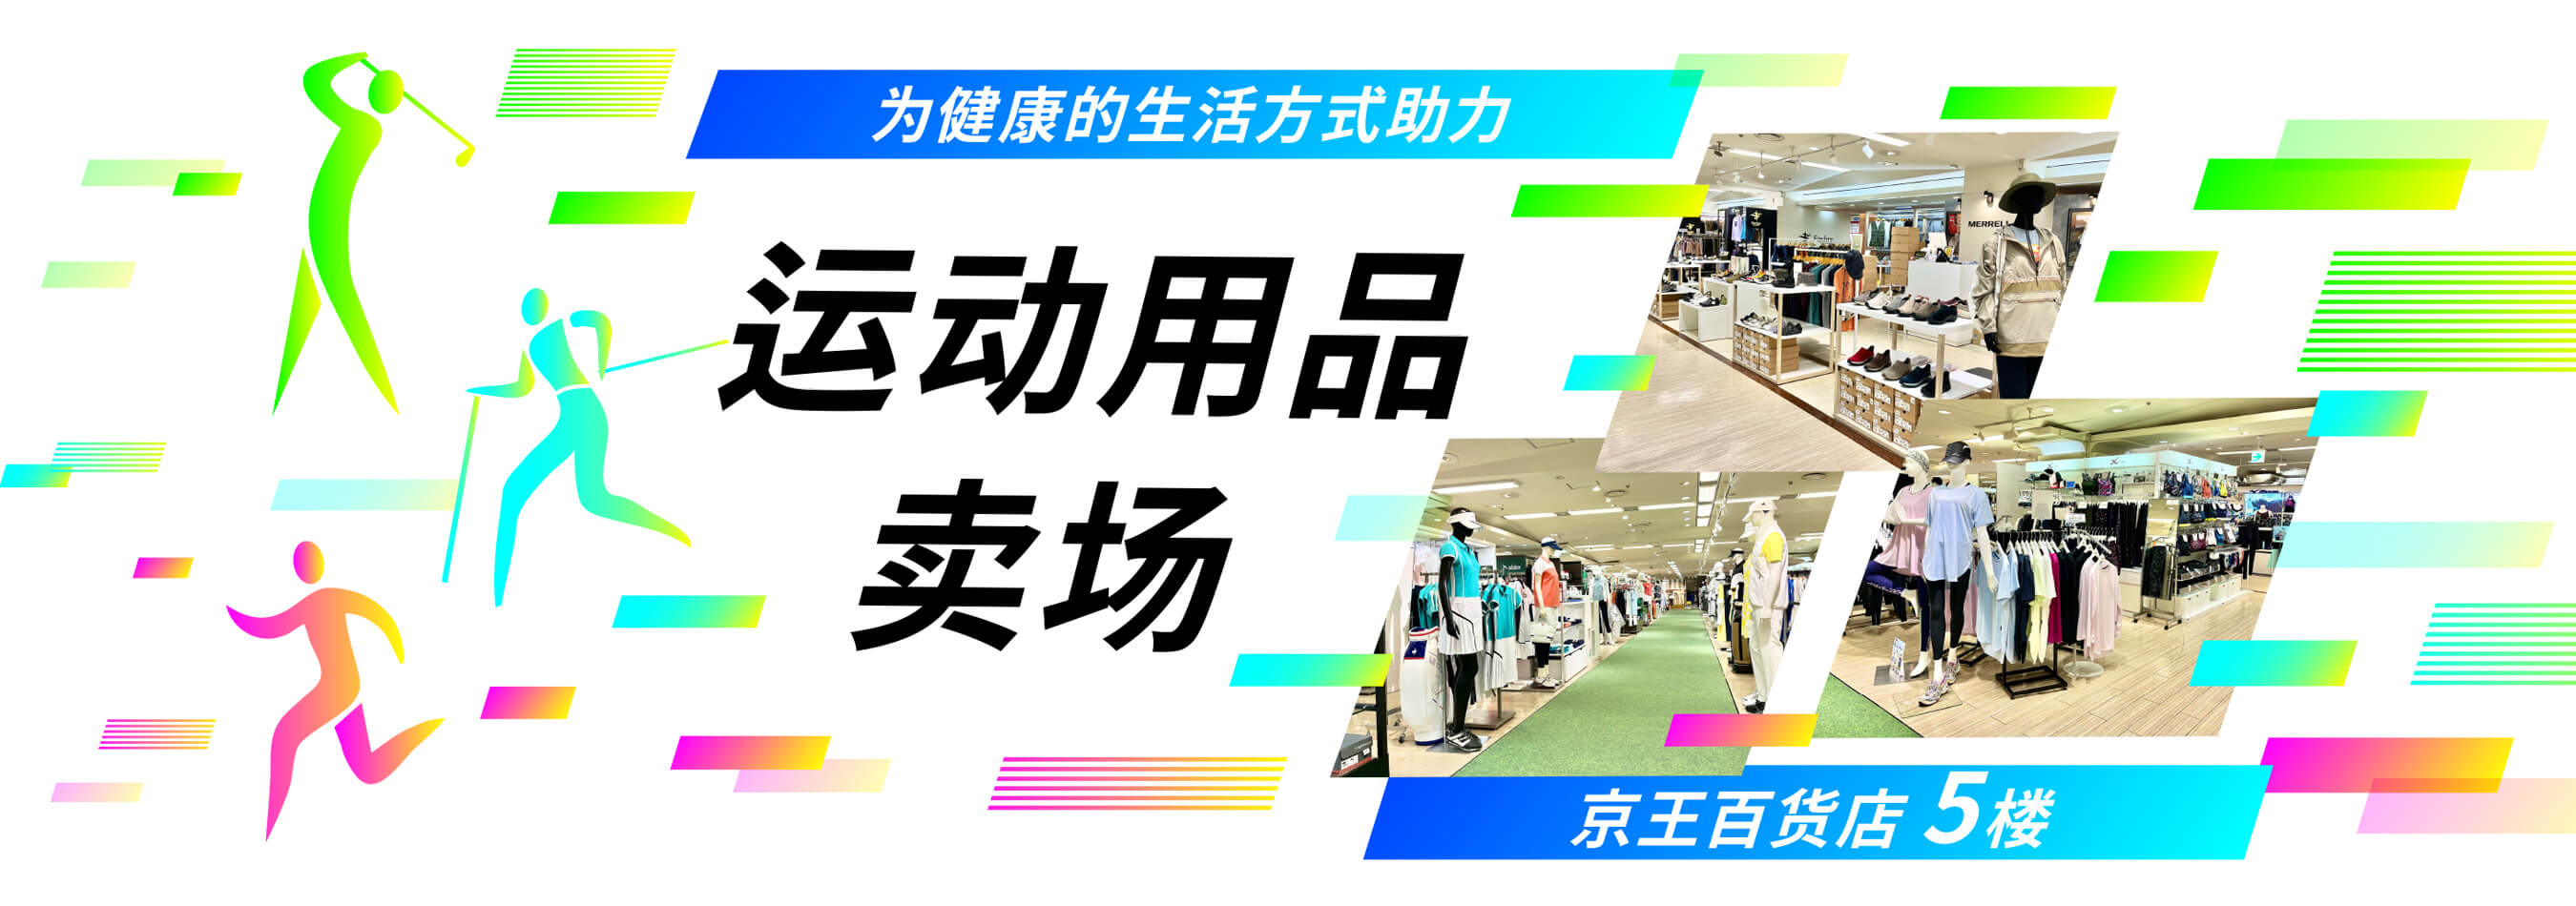 为健康的生活方式助力 运动用品卖场 | 京王百货店